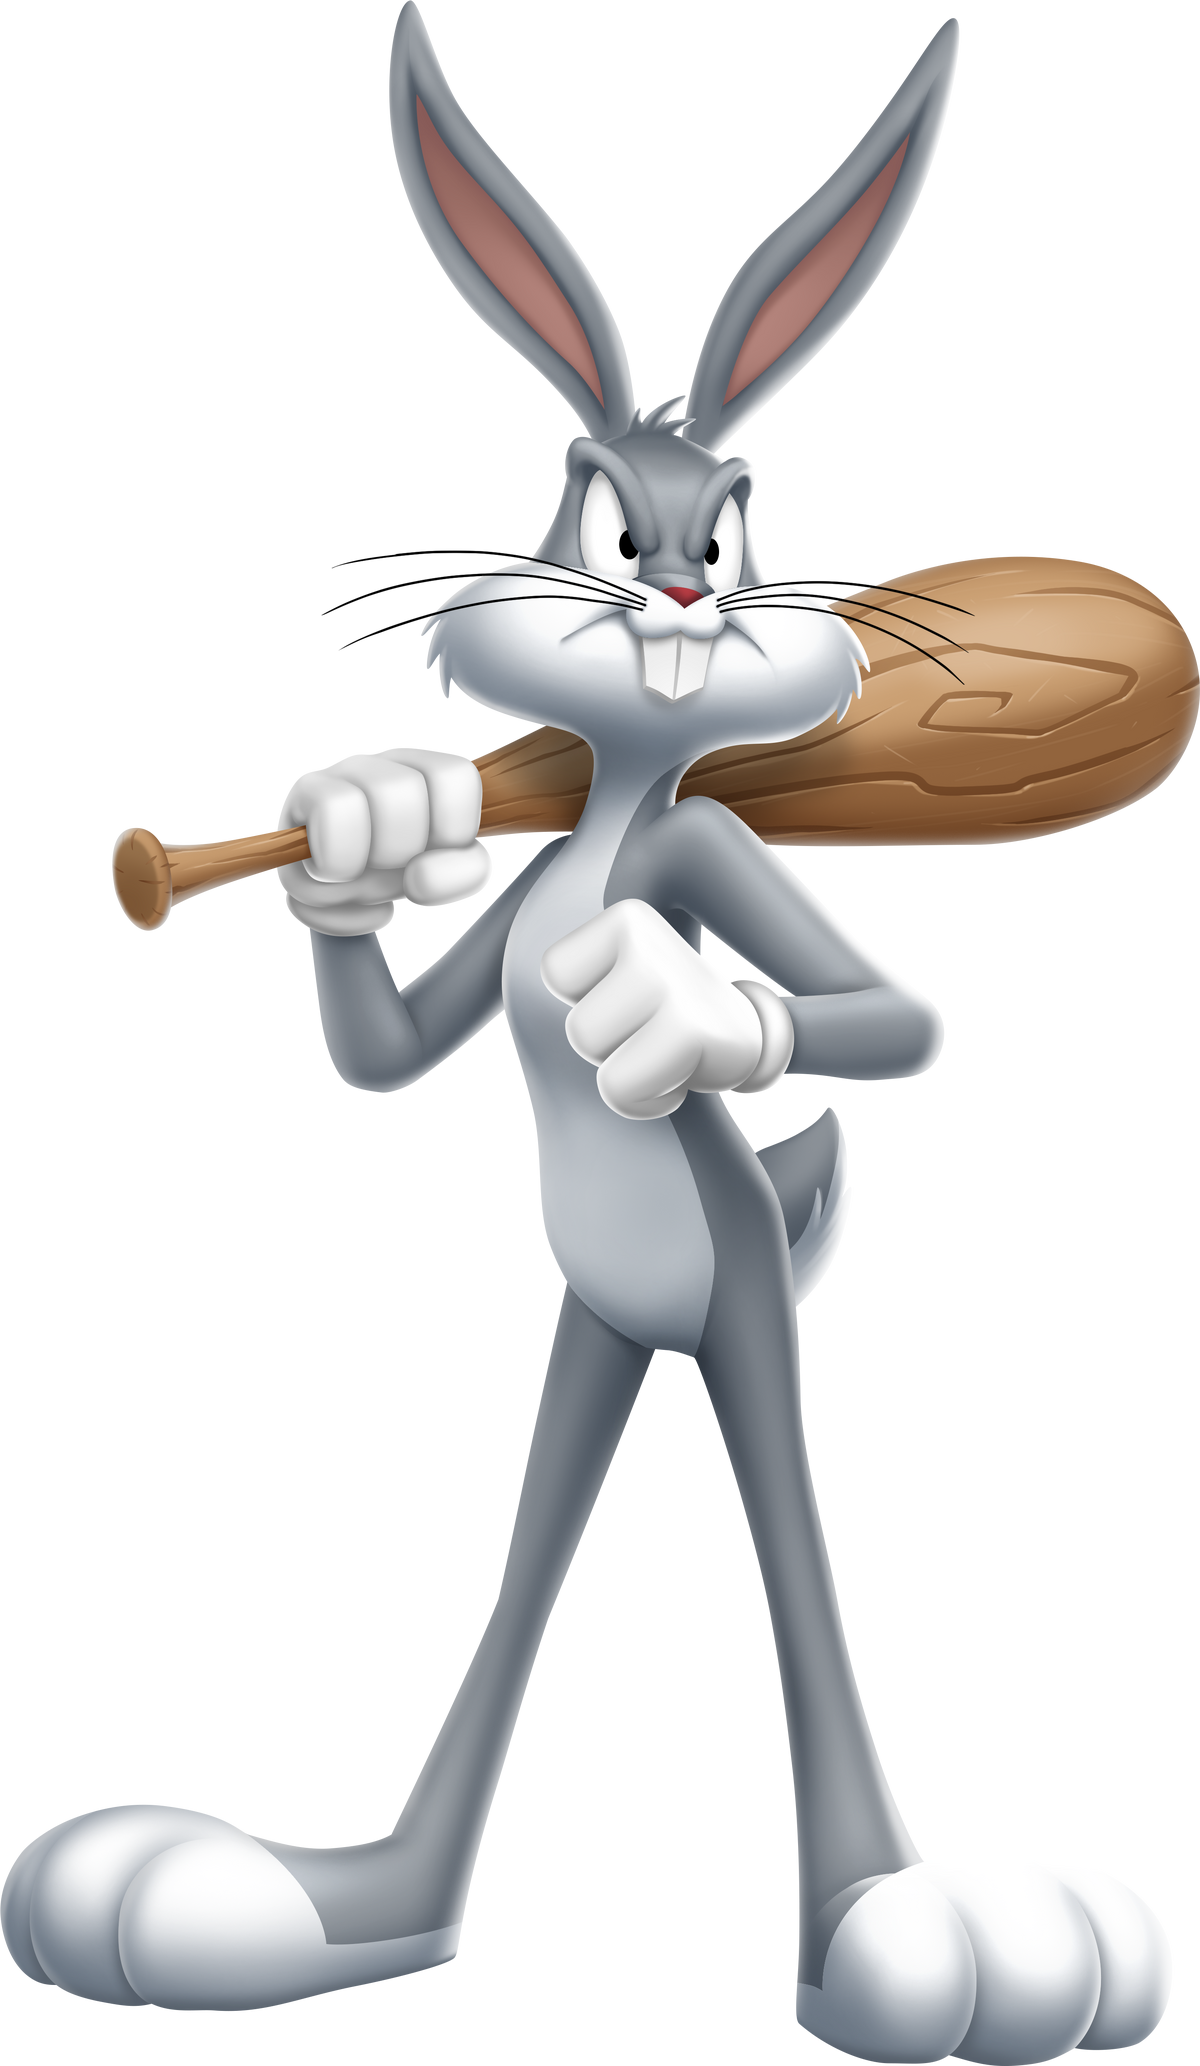 Bugs Bunny Exercise & Adventure Album, Looney Tunes Wiki